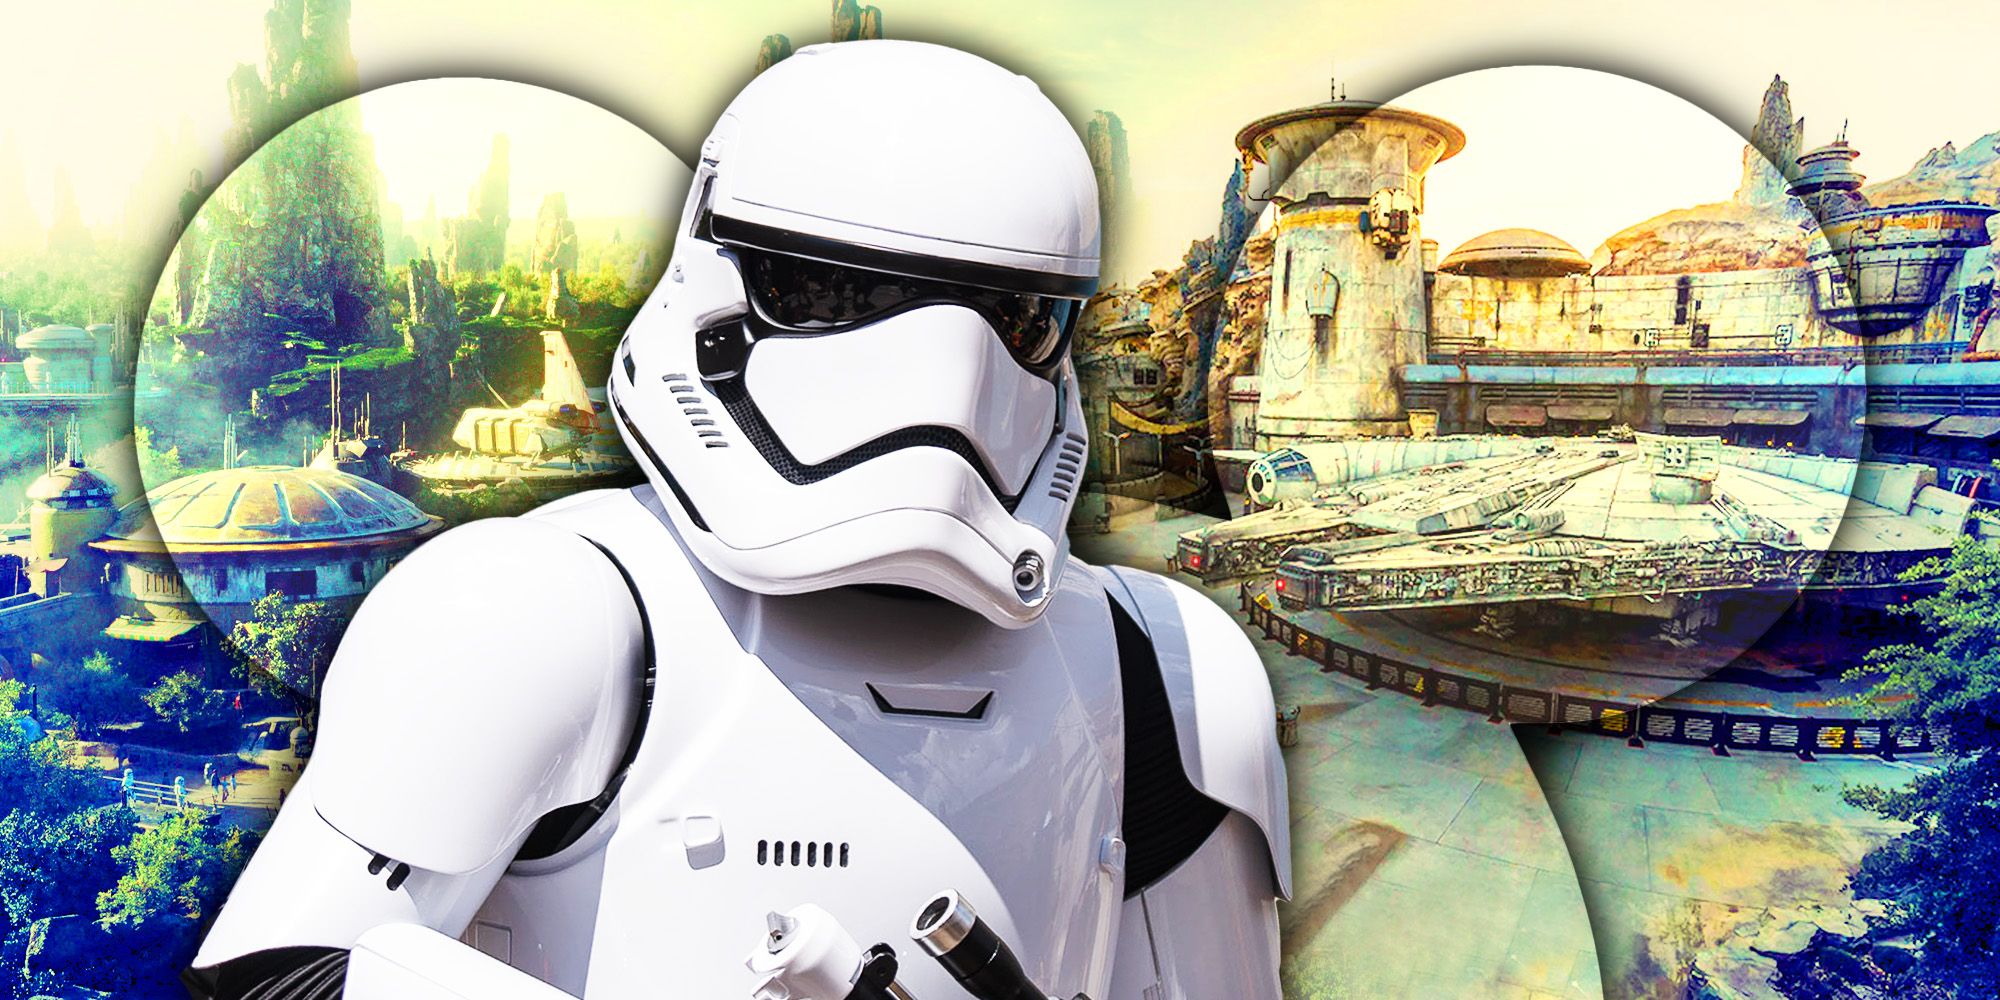 Disney aclara oficialmente el Canon de Star Wars y explica cómo los parques temáticos encajan en la continuidad